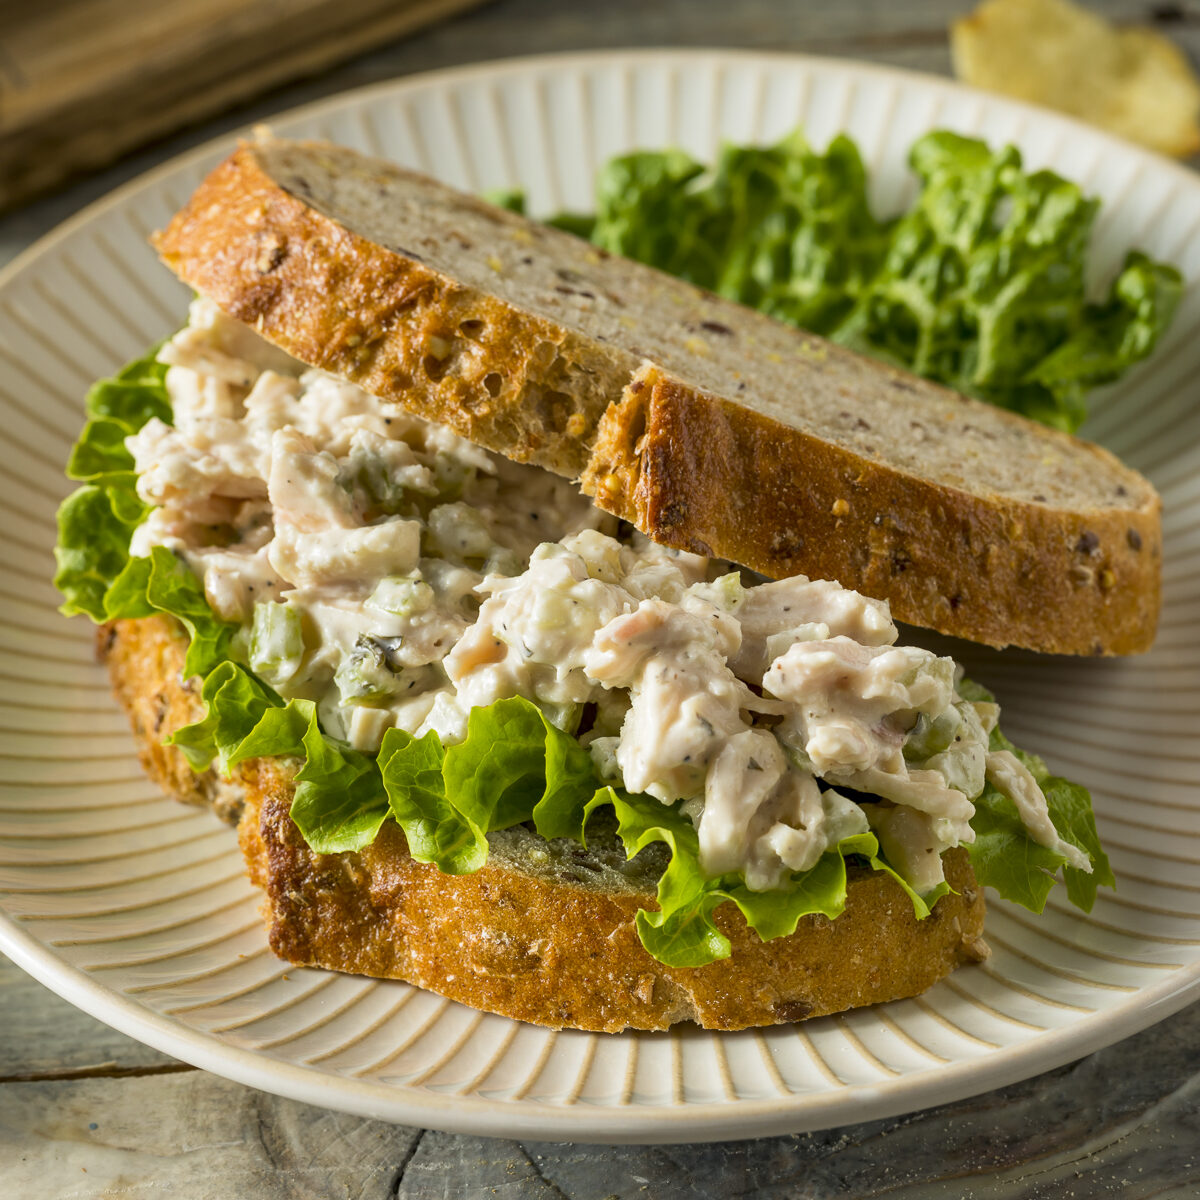 chicken salad sandwich on a plate